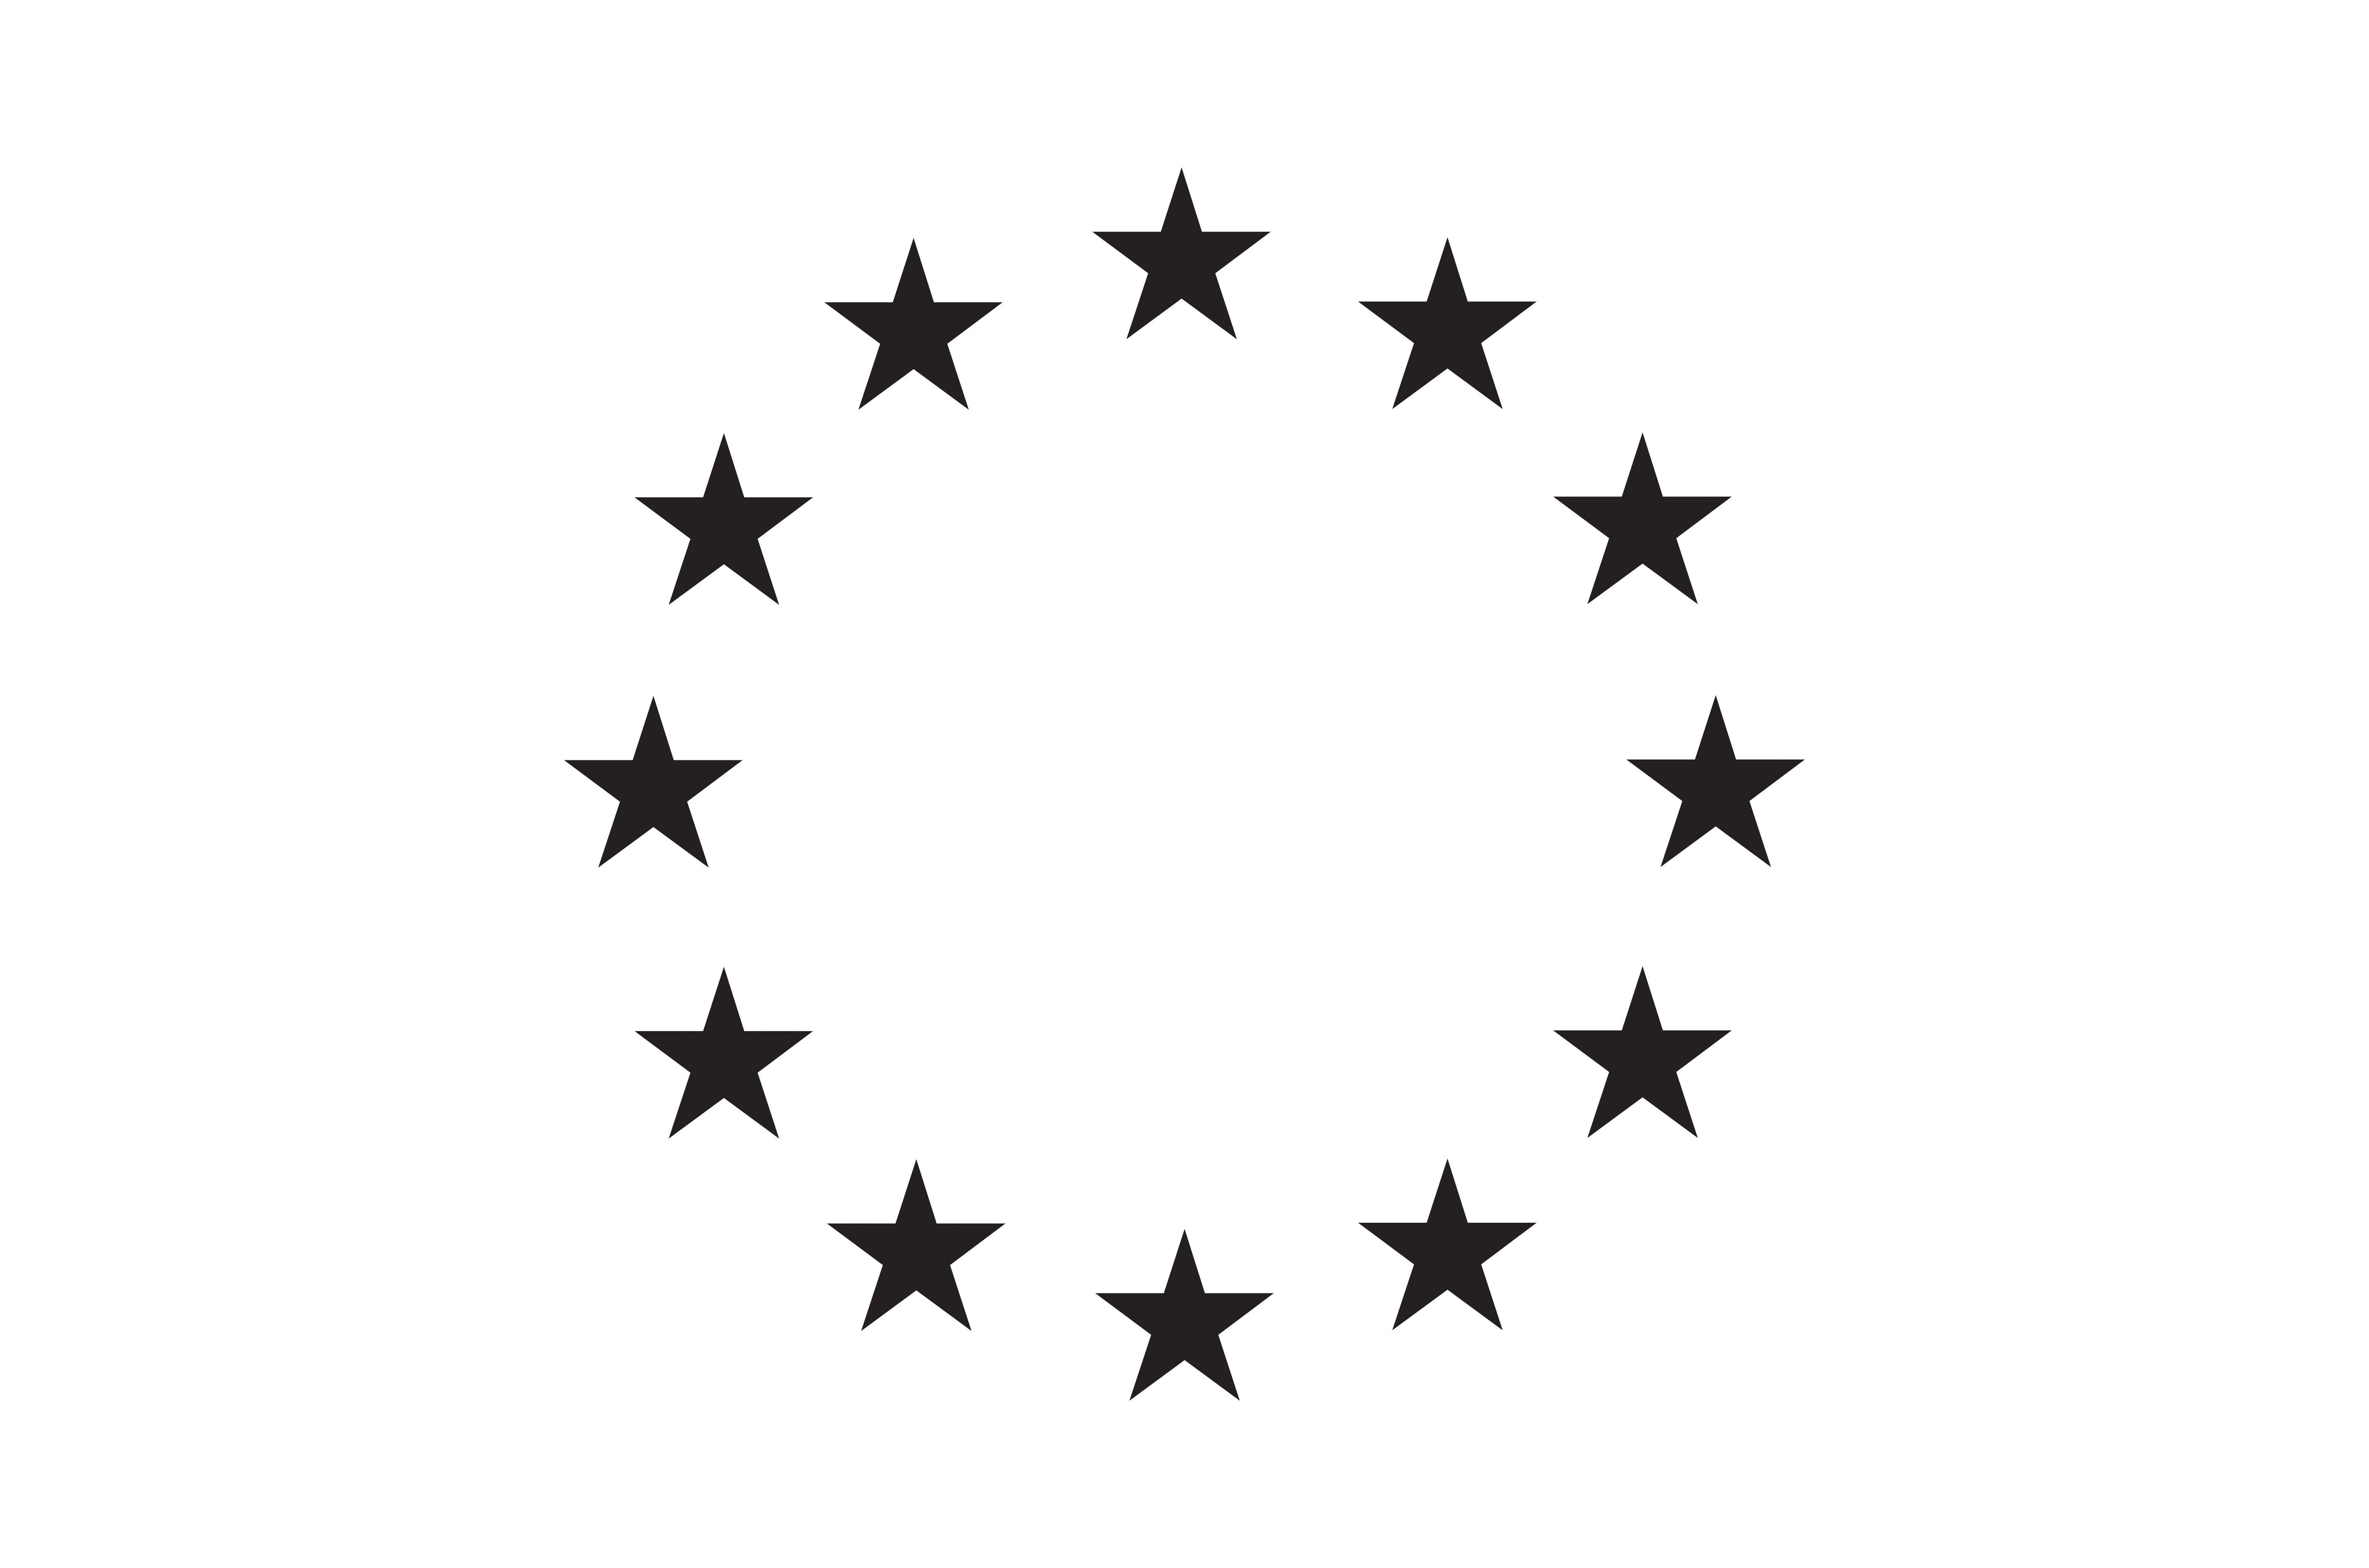 Star Black and White Logo - The European flag | European Union